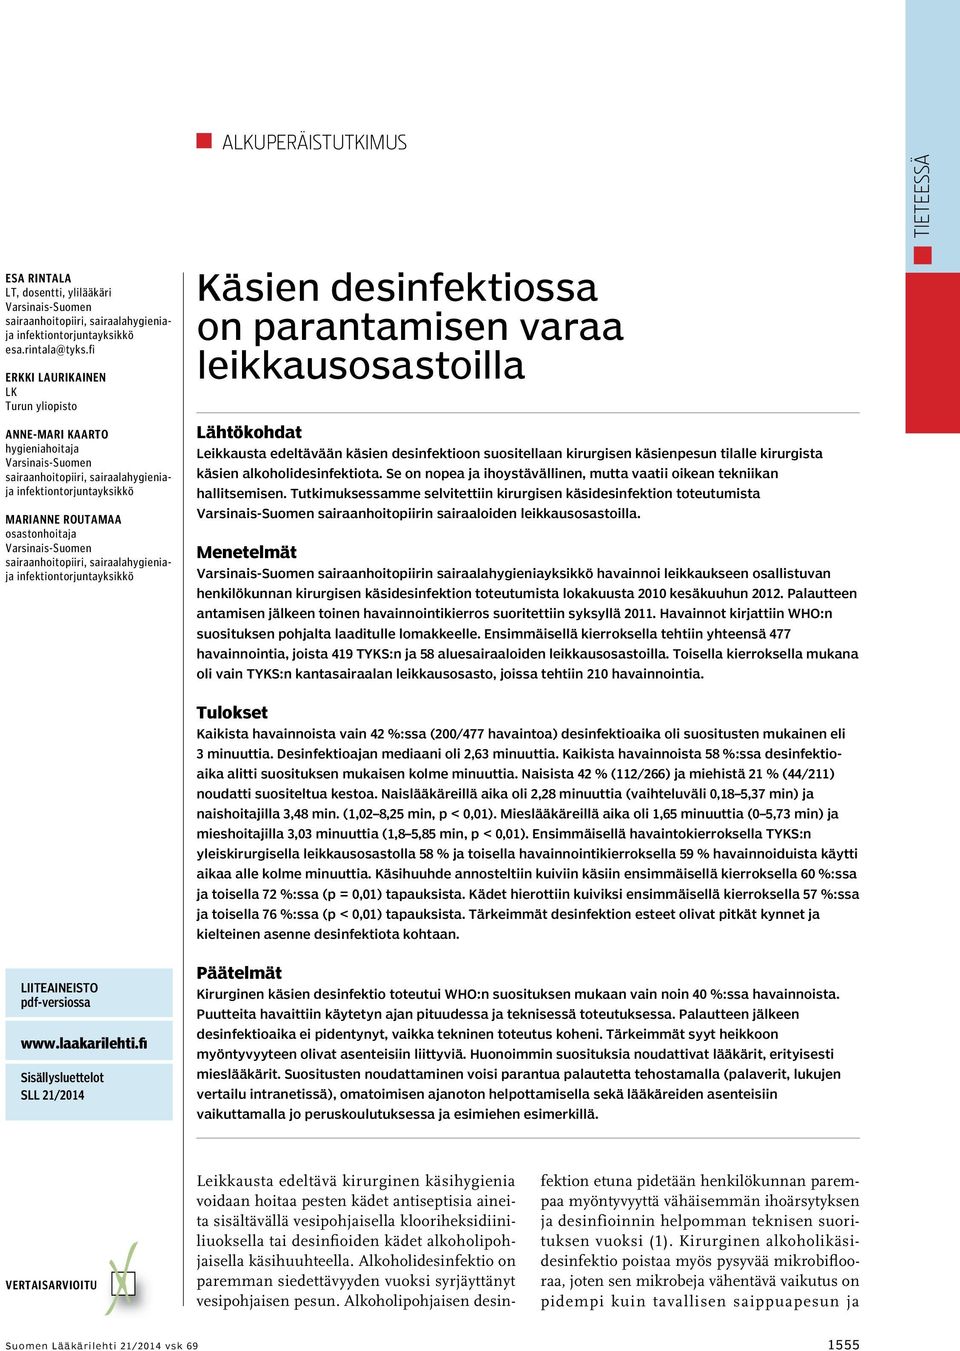 Varsinais-Suomen sairaanhoitopiiri, sairaalahygieniaja infektiontorjuntayksikkö Käsien desinfektiossa on parantamisen varaa leikkaus osastoilla Lähtökohdat Leikkausta edeltävään käsien desinfektioon